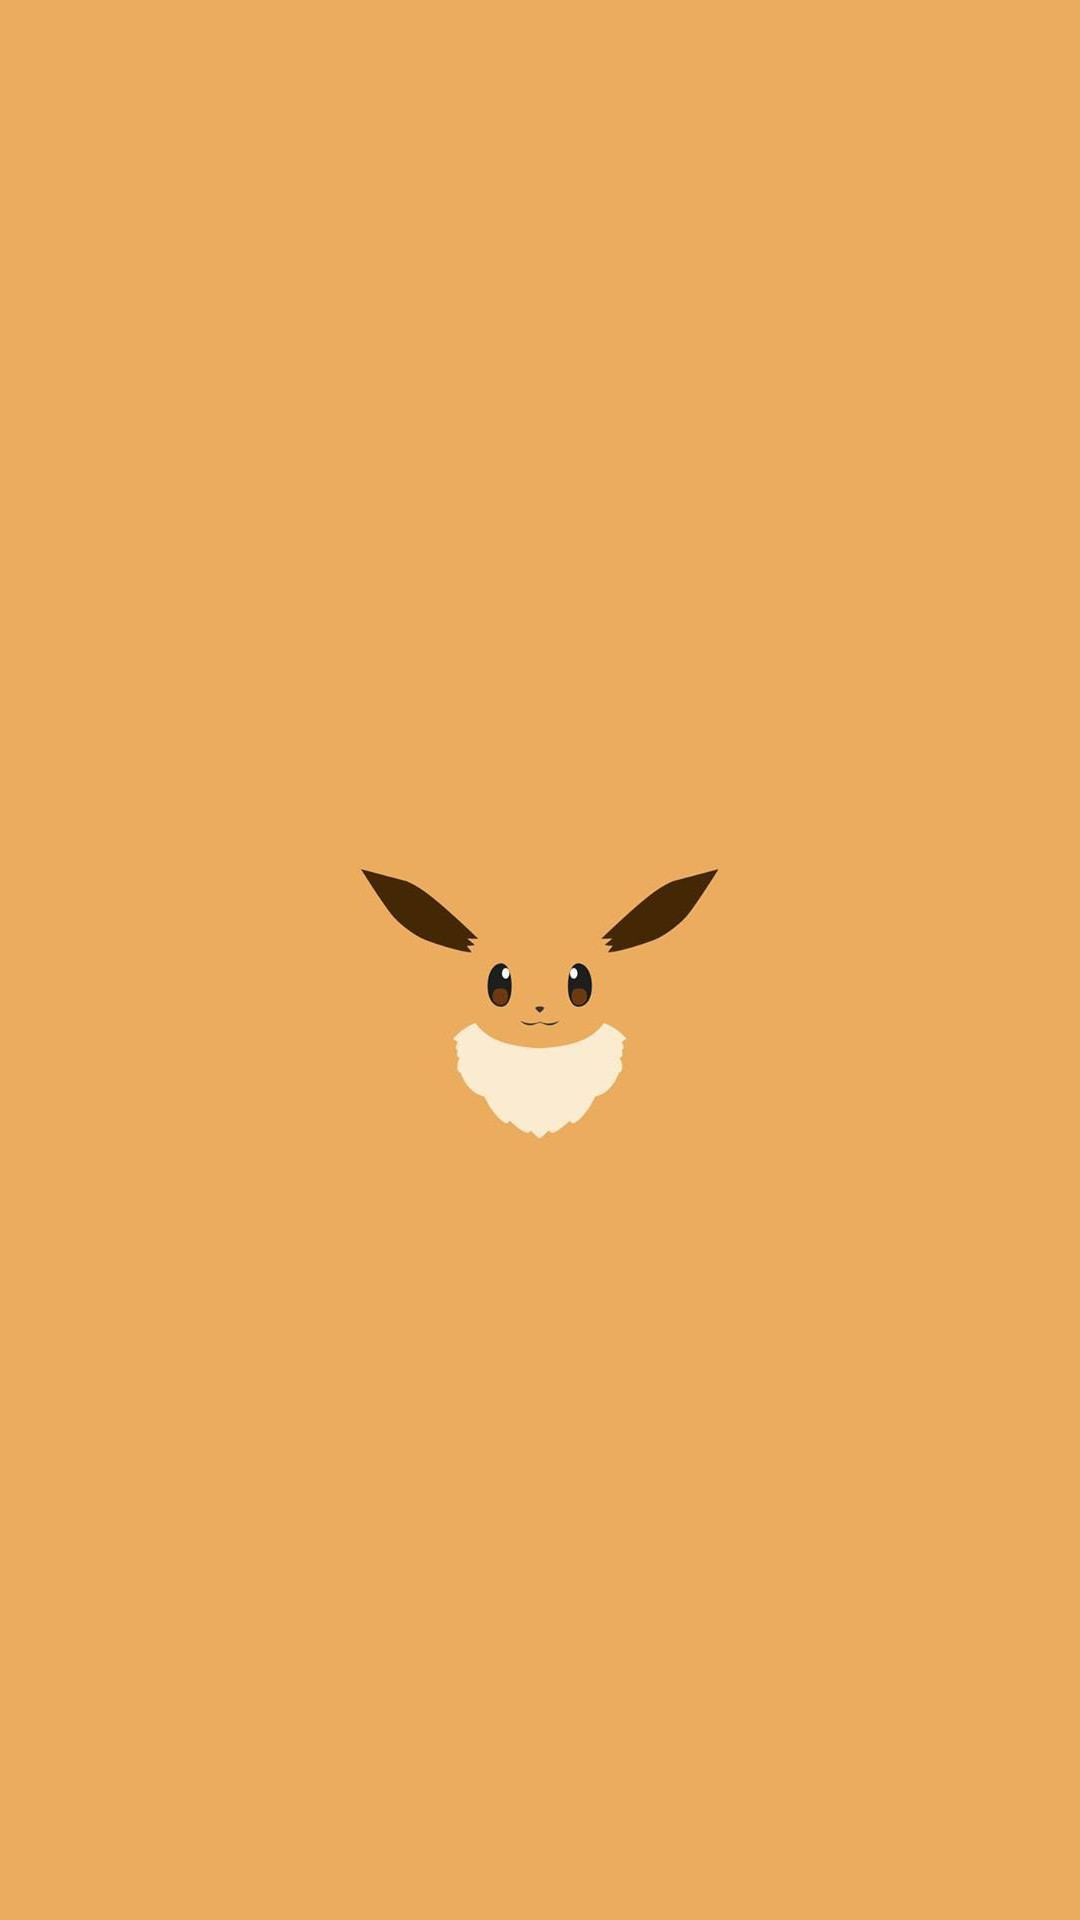 Eevee Pokemon Character iPhone 6 HD Wallpaper